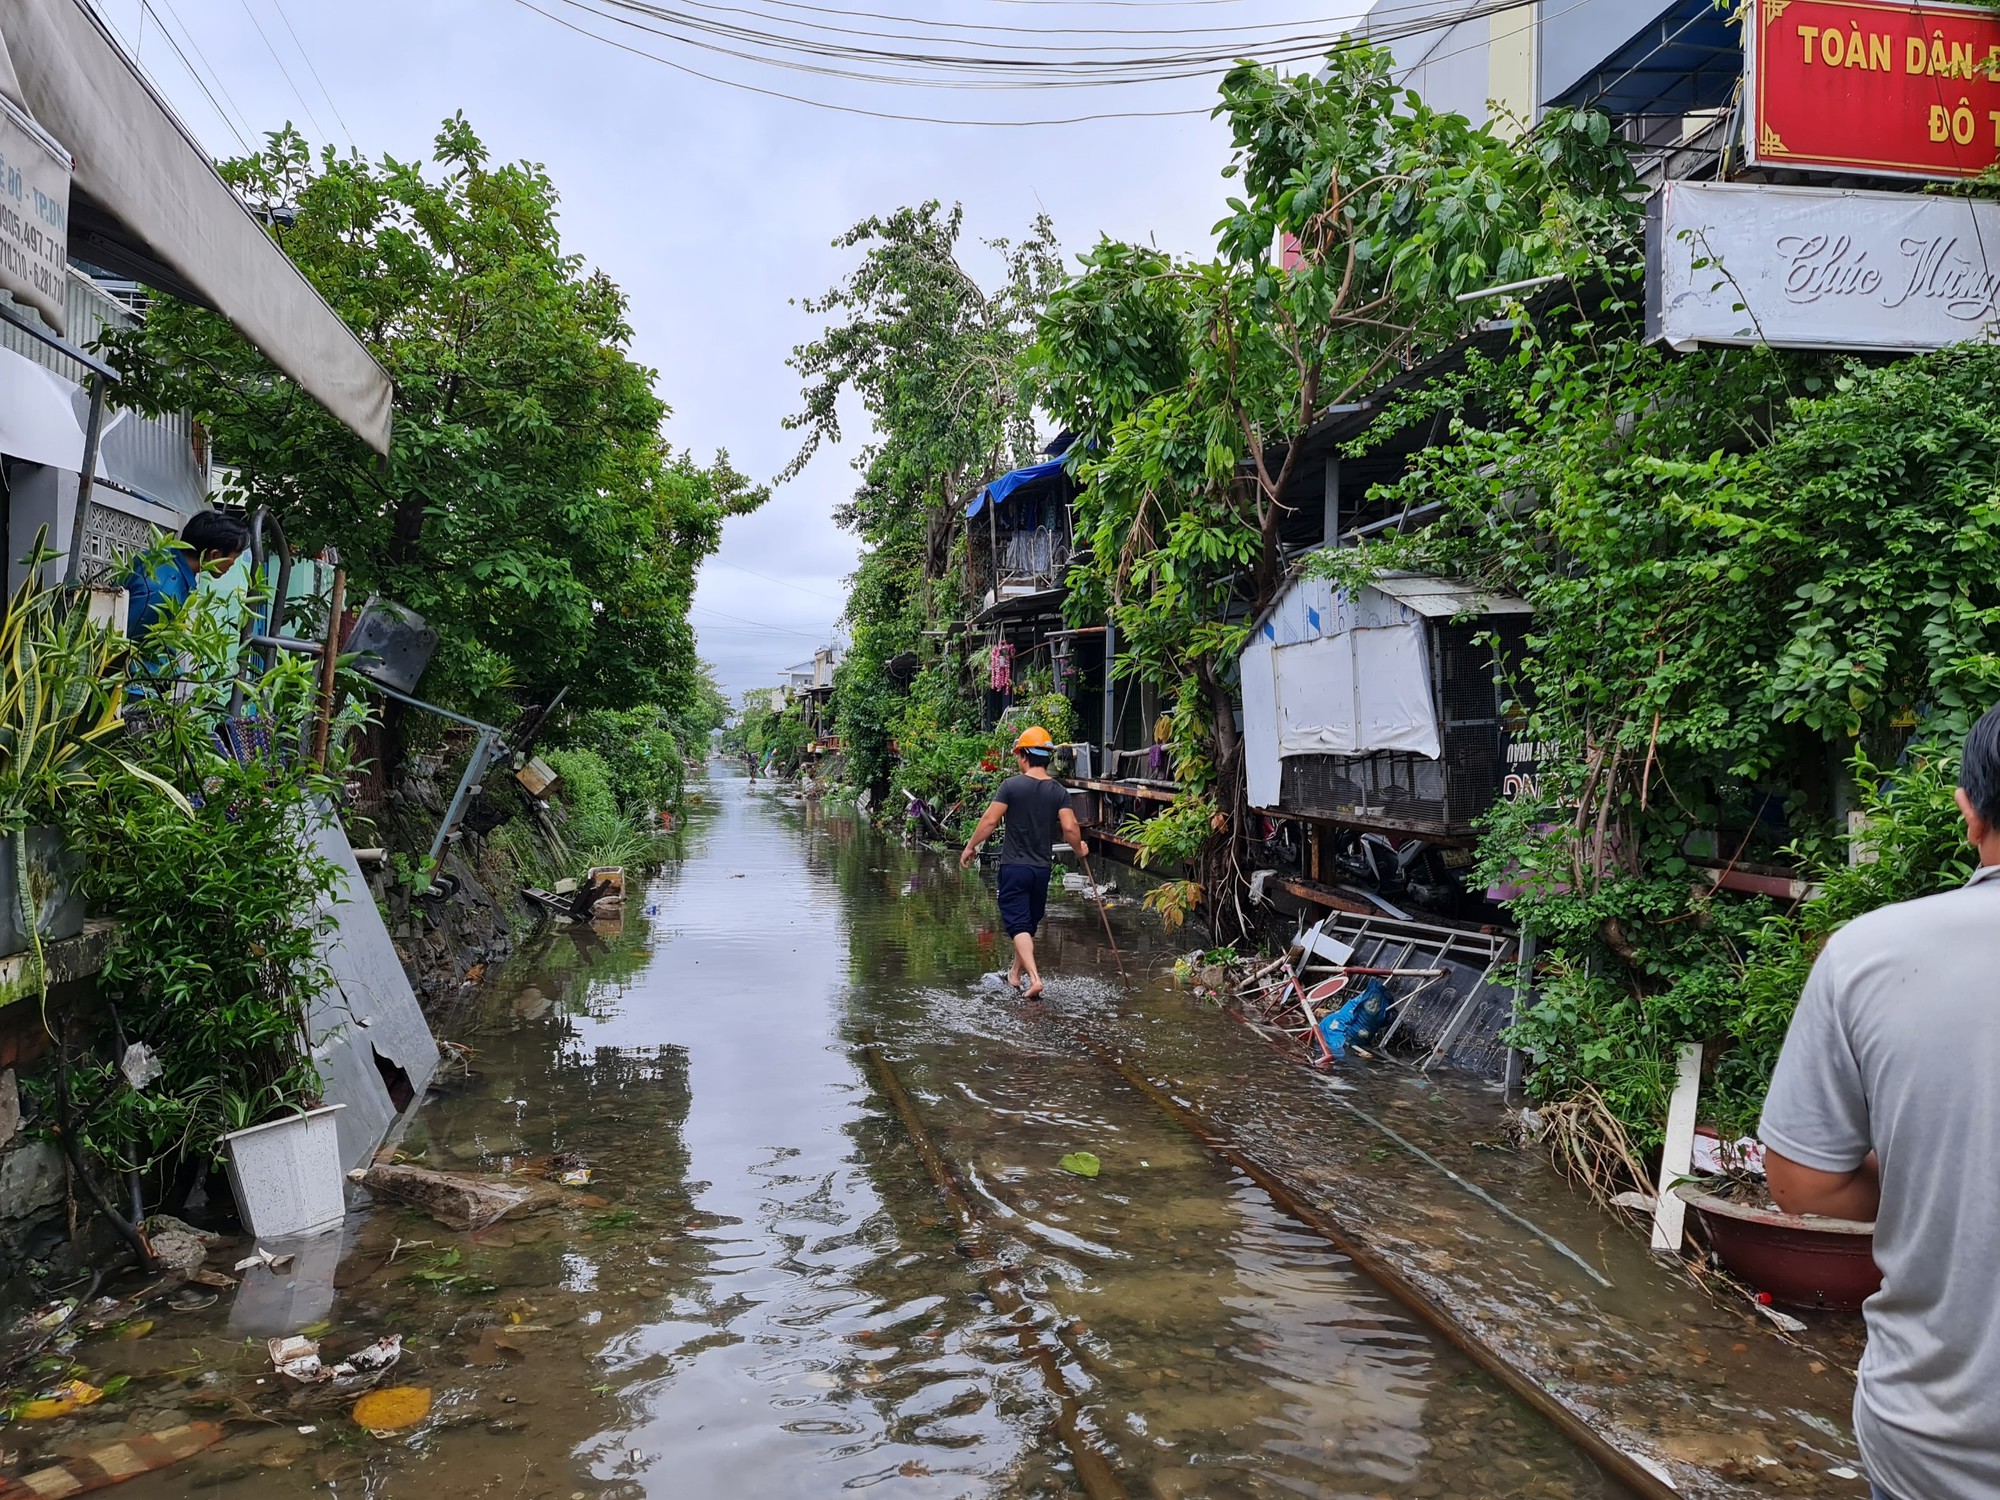 CLIP: Đà Nẵng sau trận mưa ngập lịch sử: Đường phố xơ xác, xe chết máy nằm la liệt... - Ảnh 12.